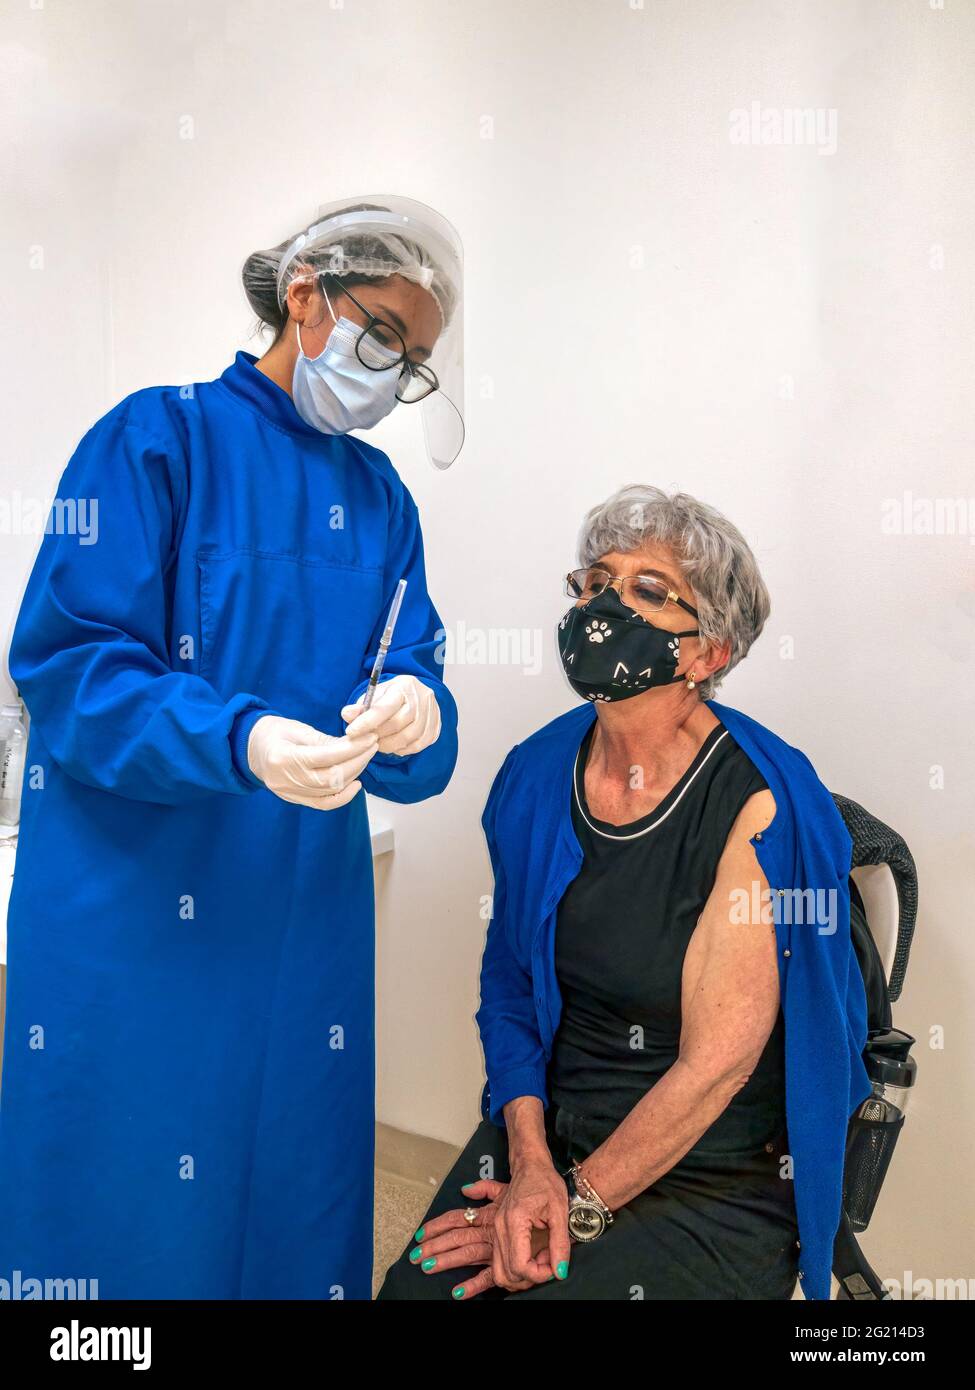 Bogota, Colombie - l'image montre une dame latino-américaine d'origine colombienne vaccinée contre Covid-19 dans la capitale andine dans un centre de vaccination. L'infirmière est vue expliquant l'antivirus et le dosage à la dame. Photo prise sur un appareil mobile. Banque D'Images